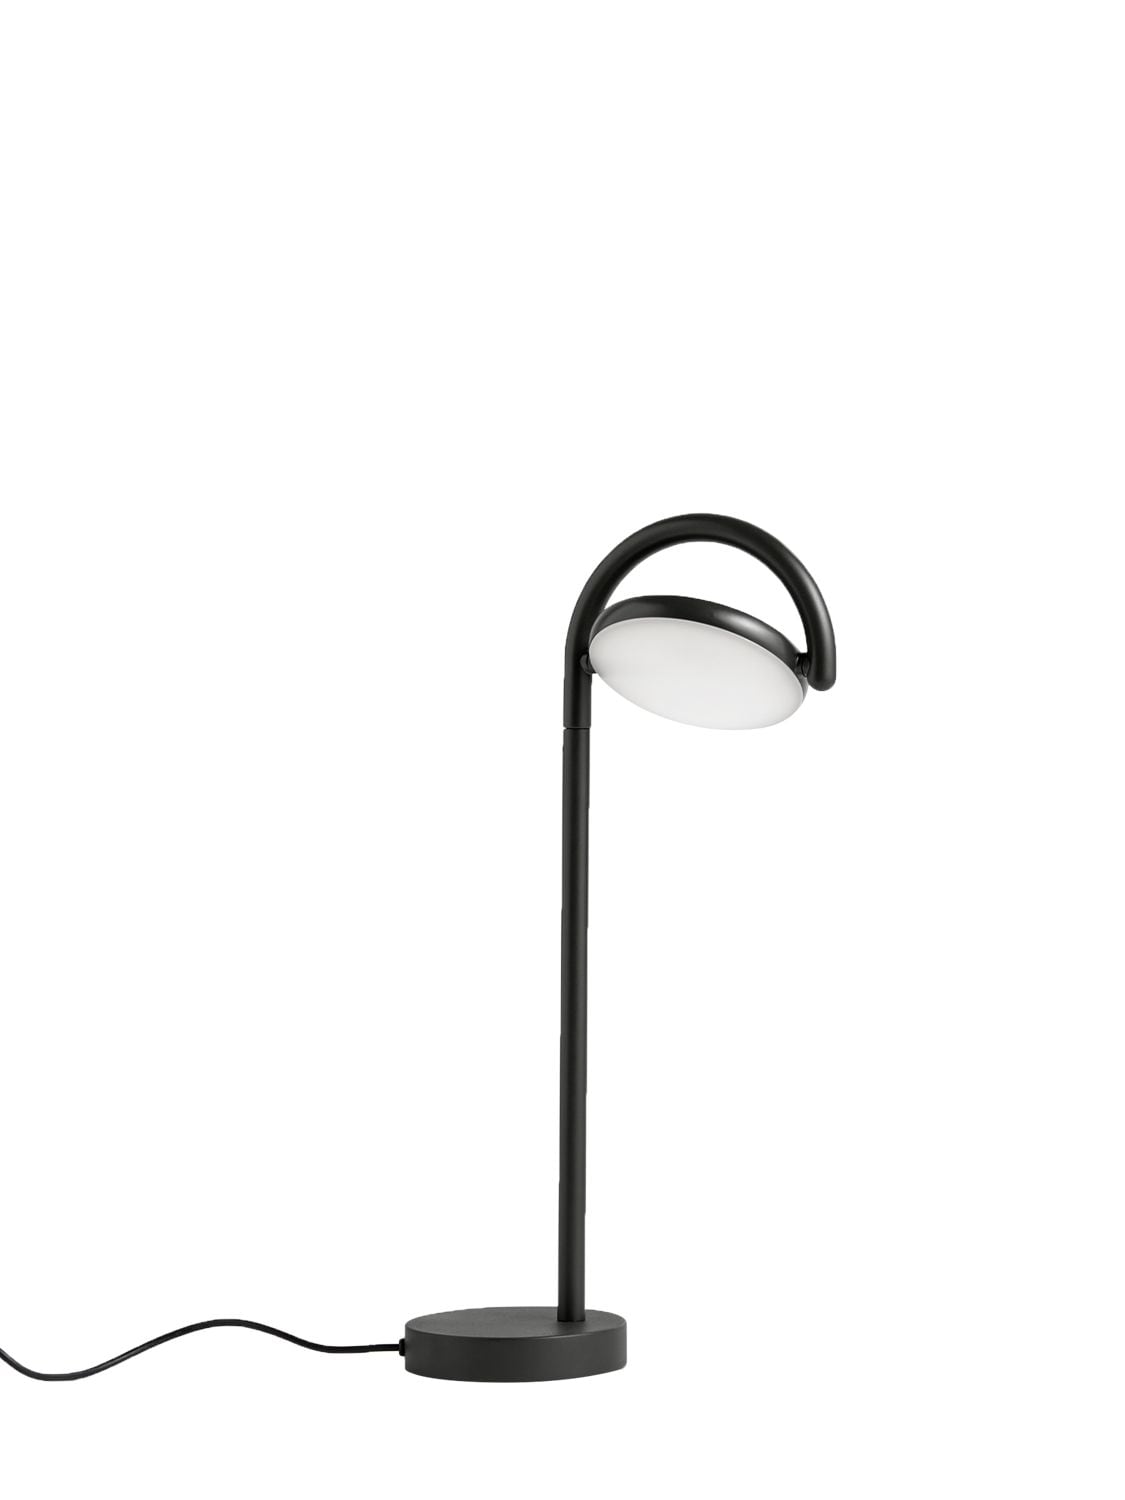 Hay Marselis Table Lamp In Black